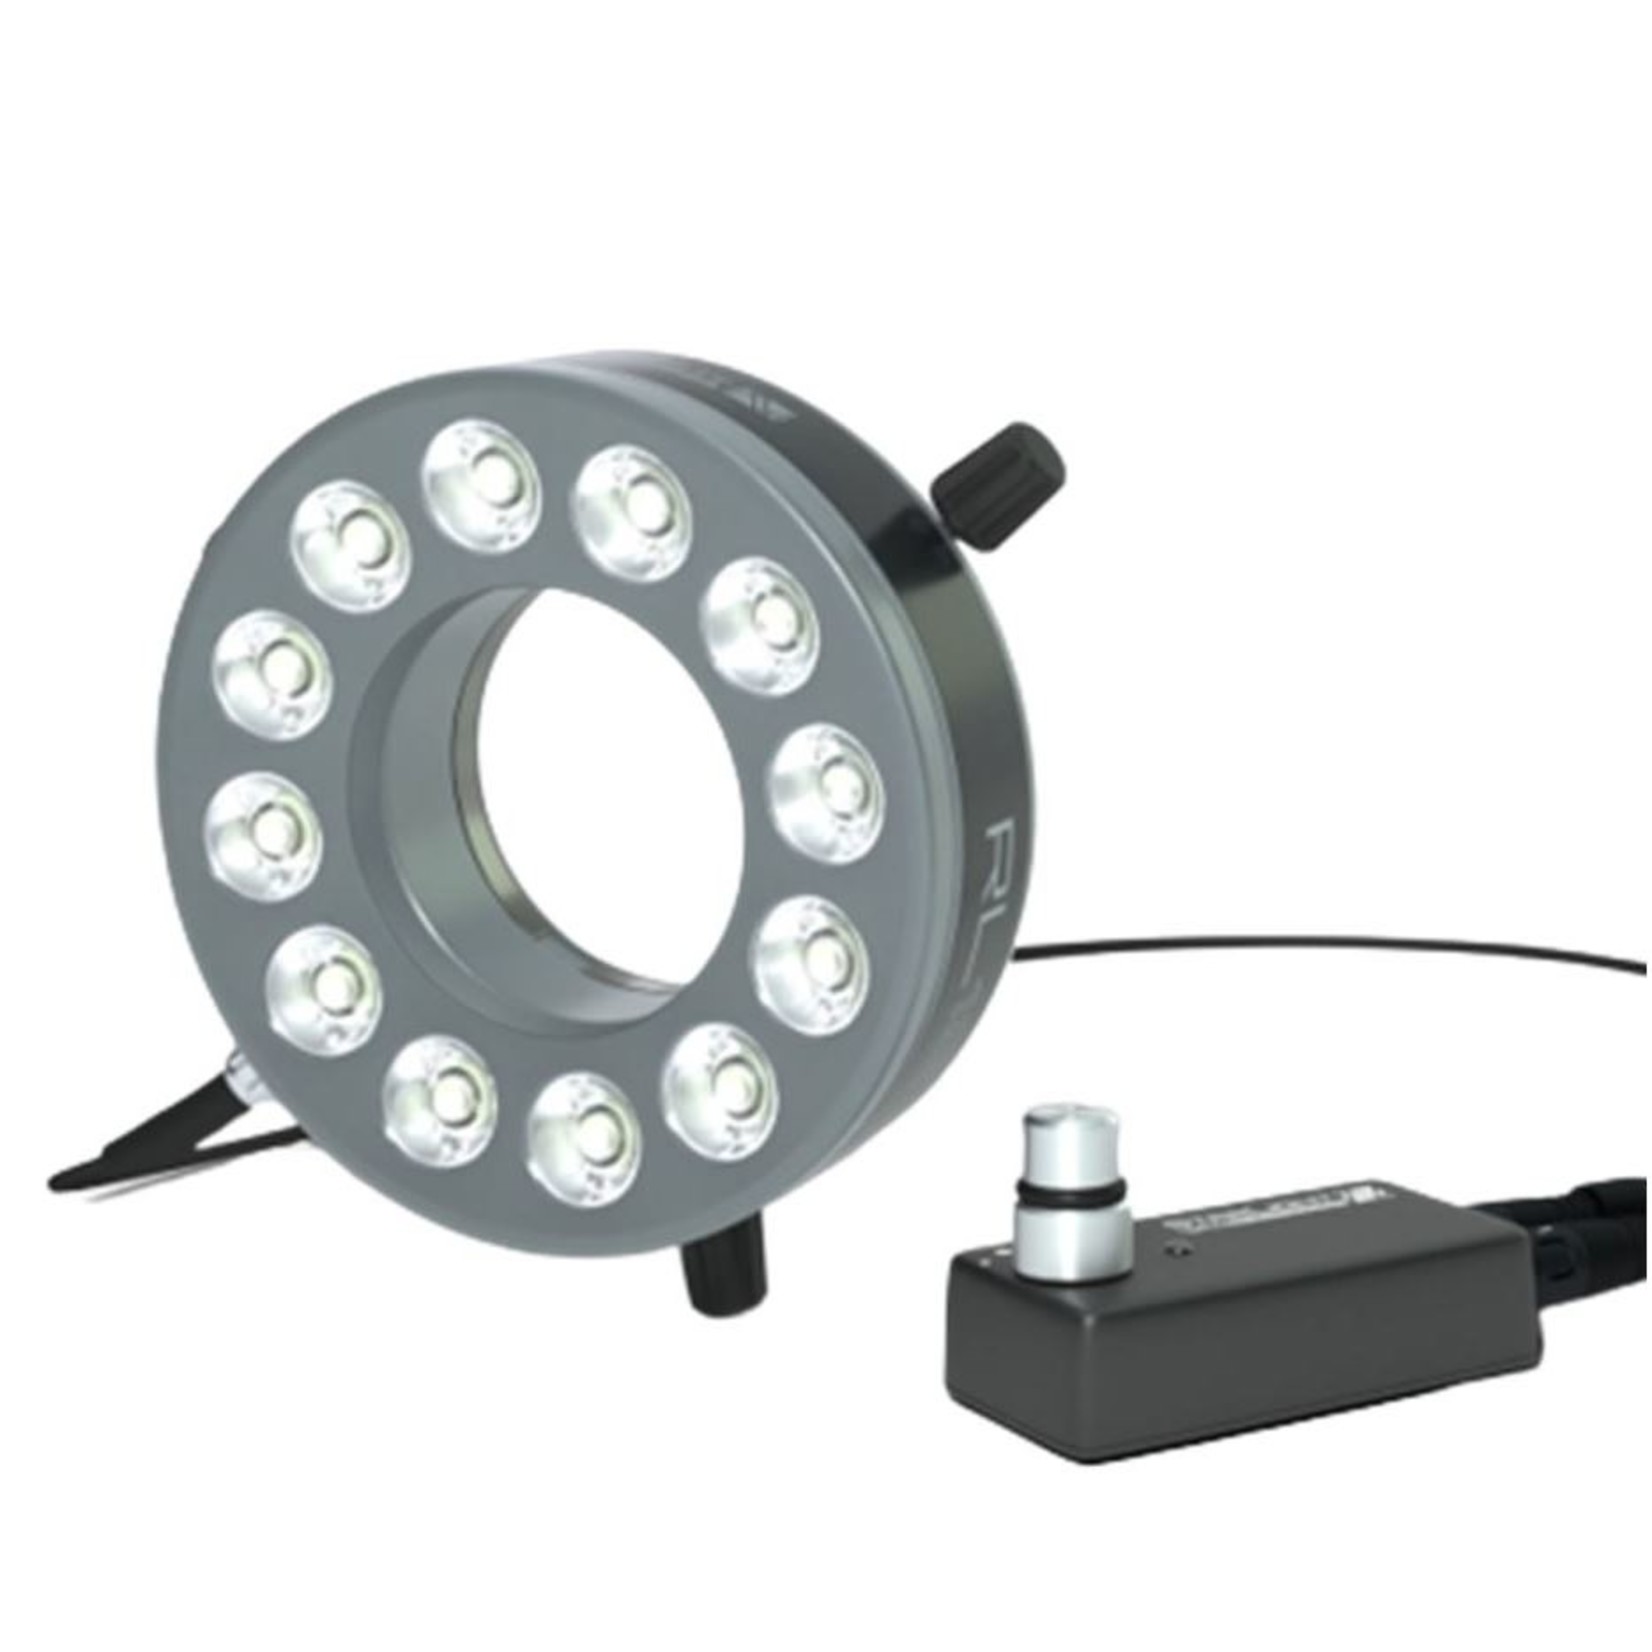 Lichtstarkes Hochleistungs-Ringlicht für Arbeitsabstand 40 mm bis 220 mm - optimal ca. 100 mm